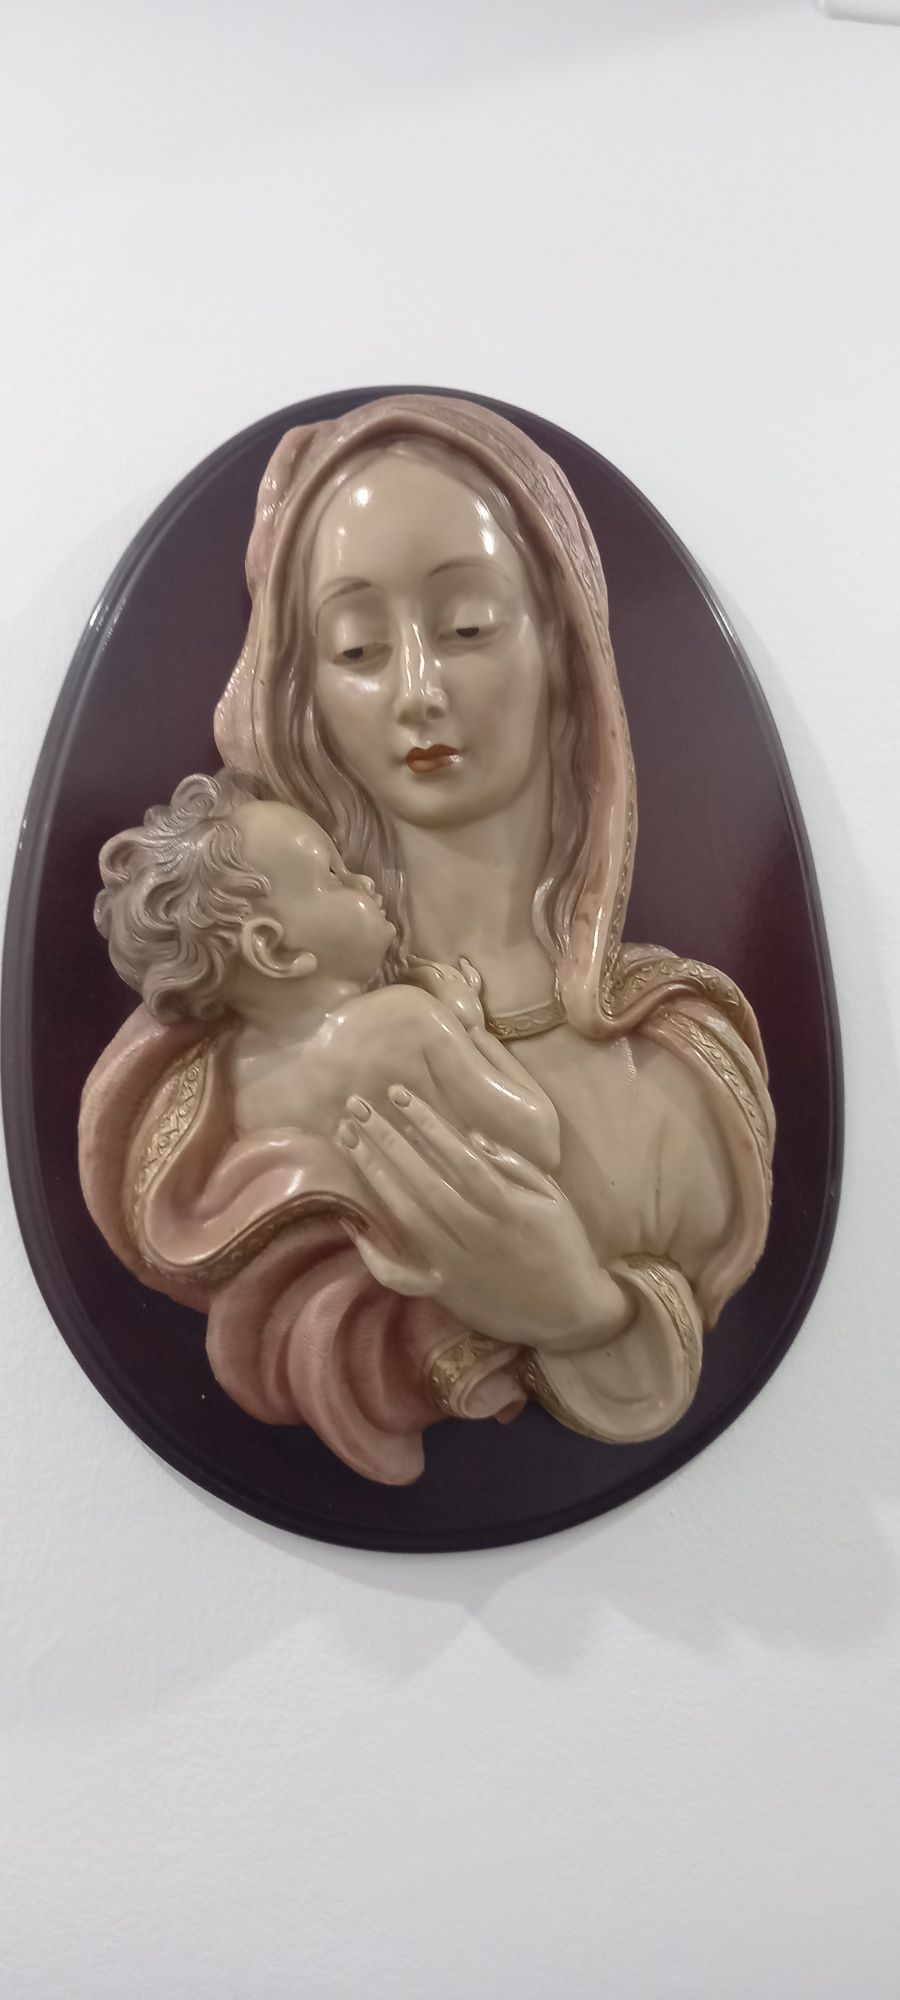 Vendo linda imagem de mãe e filho com base de madeira